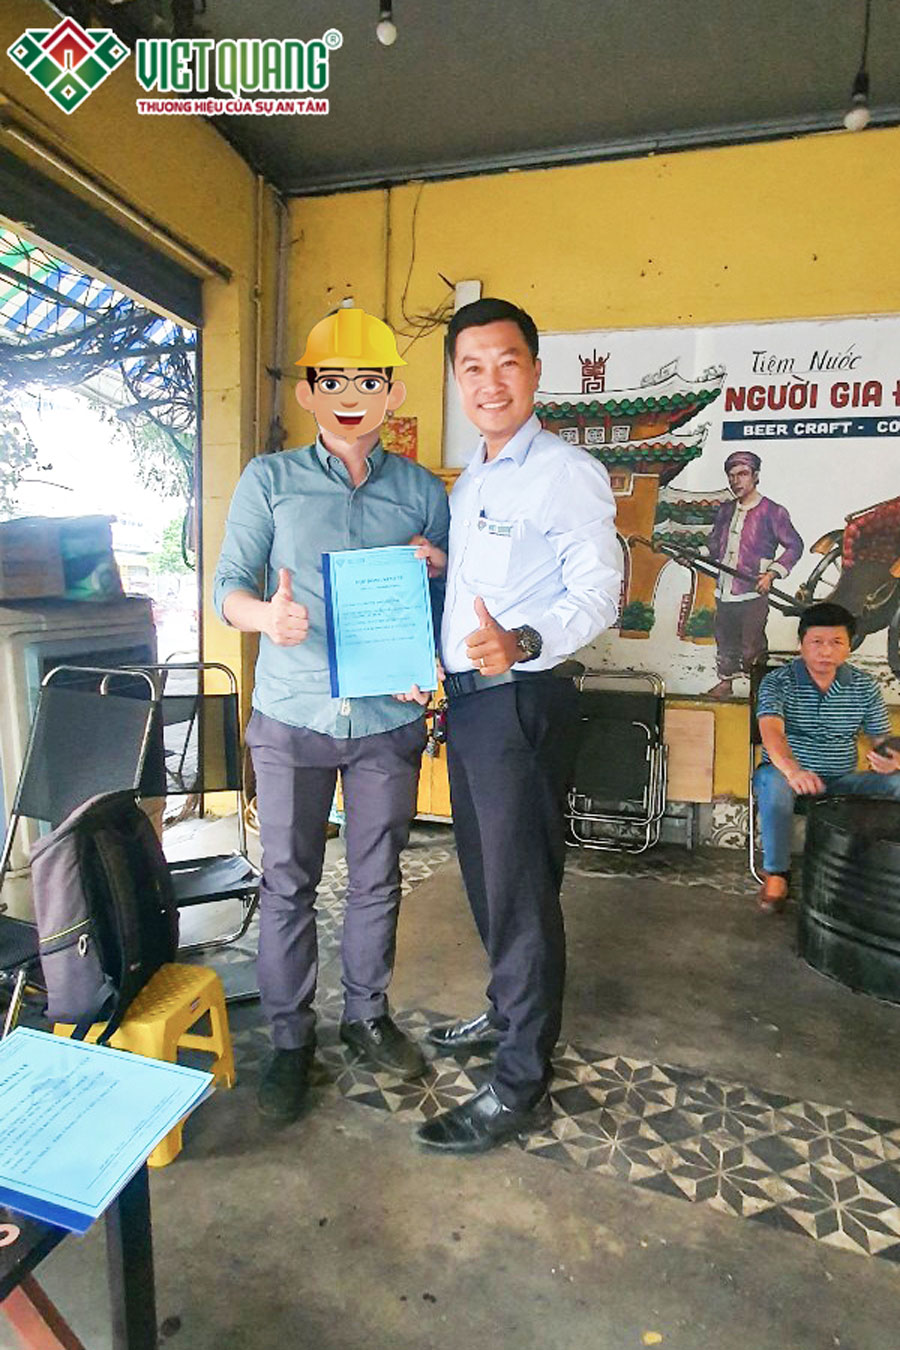 Anh Lợi ký hợp đồng sửa nhà trọn gói với Việt Quang Group